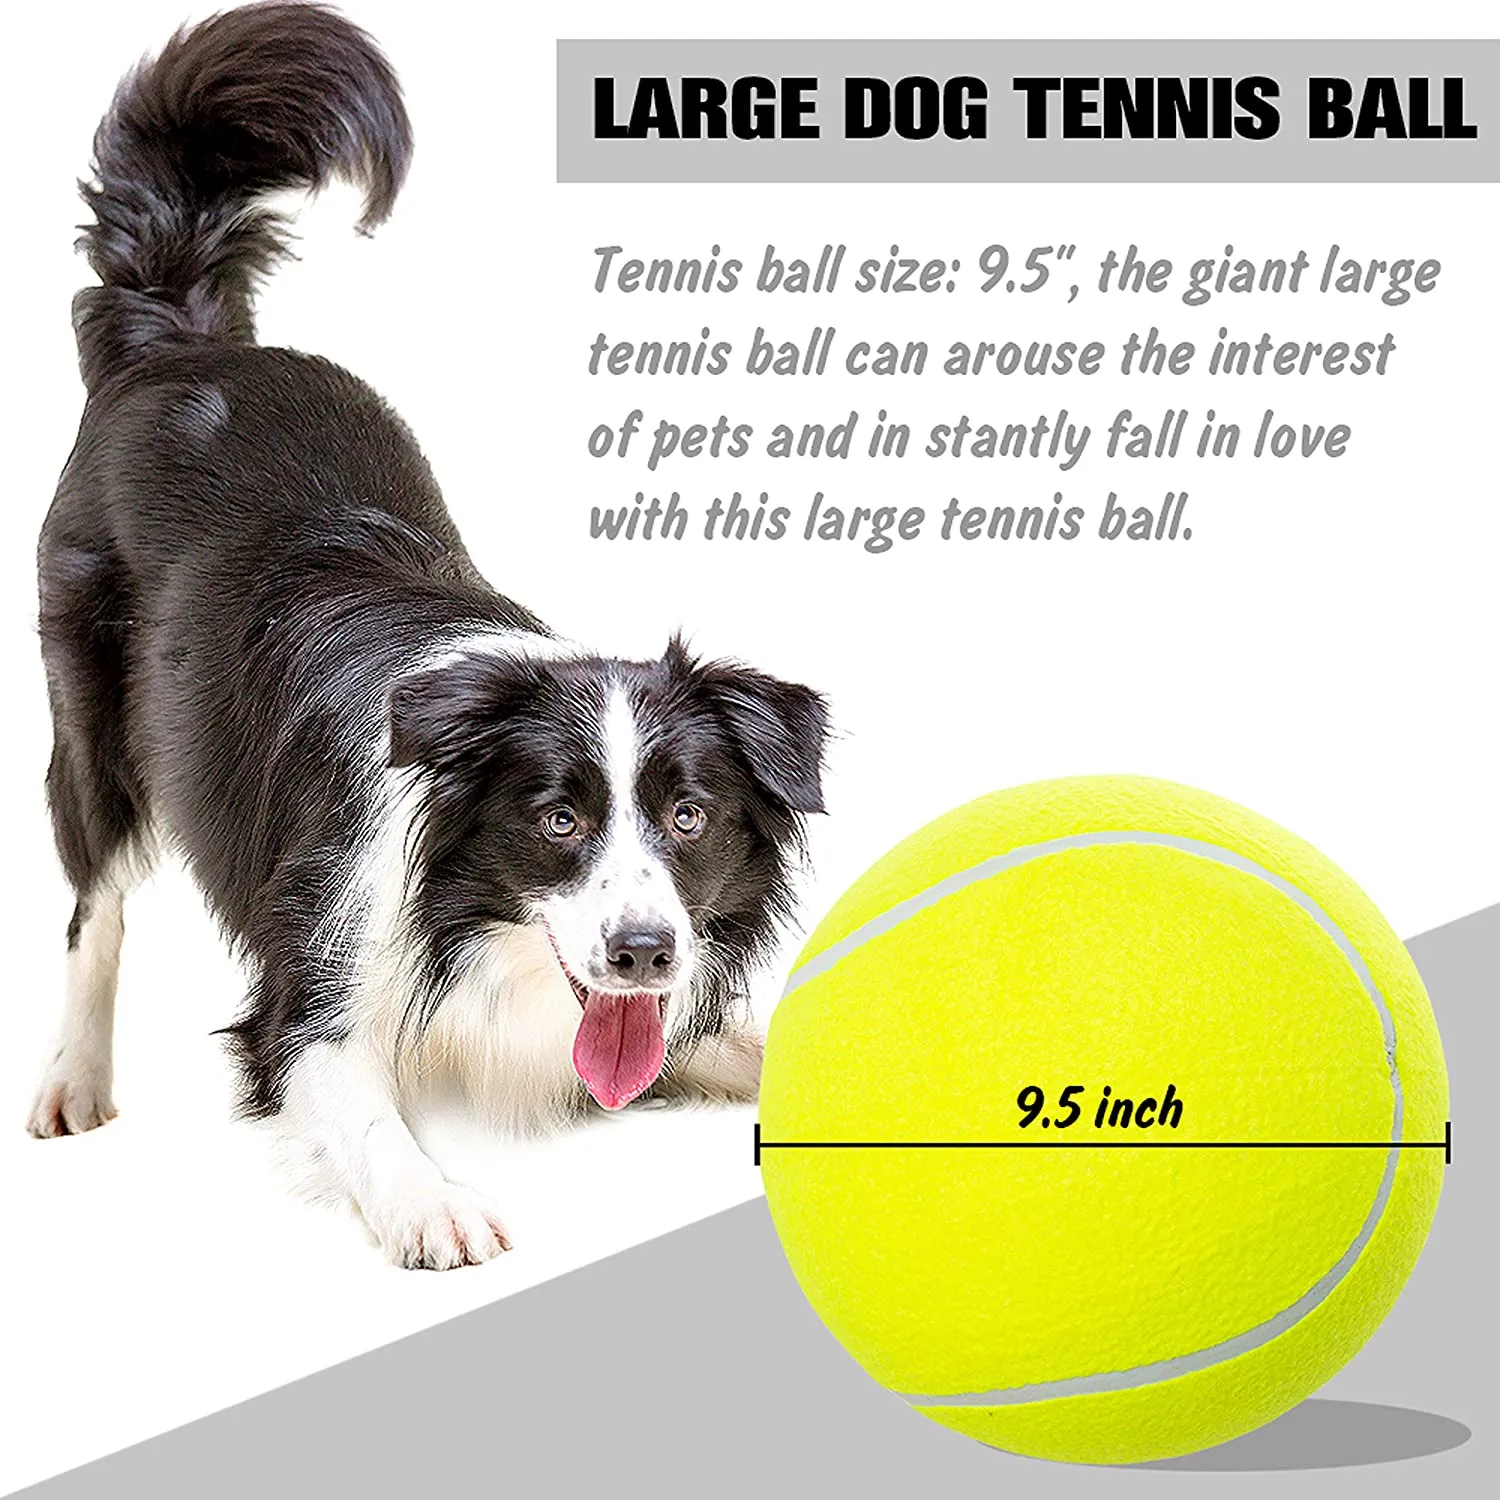 犬のおもちゃのボール9.5 "大型テニスボールインタラクティブおもちゃ屋内中の犬の面白いインフレータブルゴム